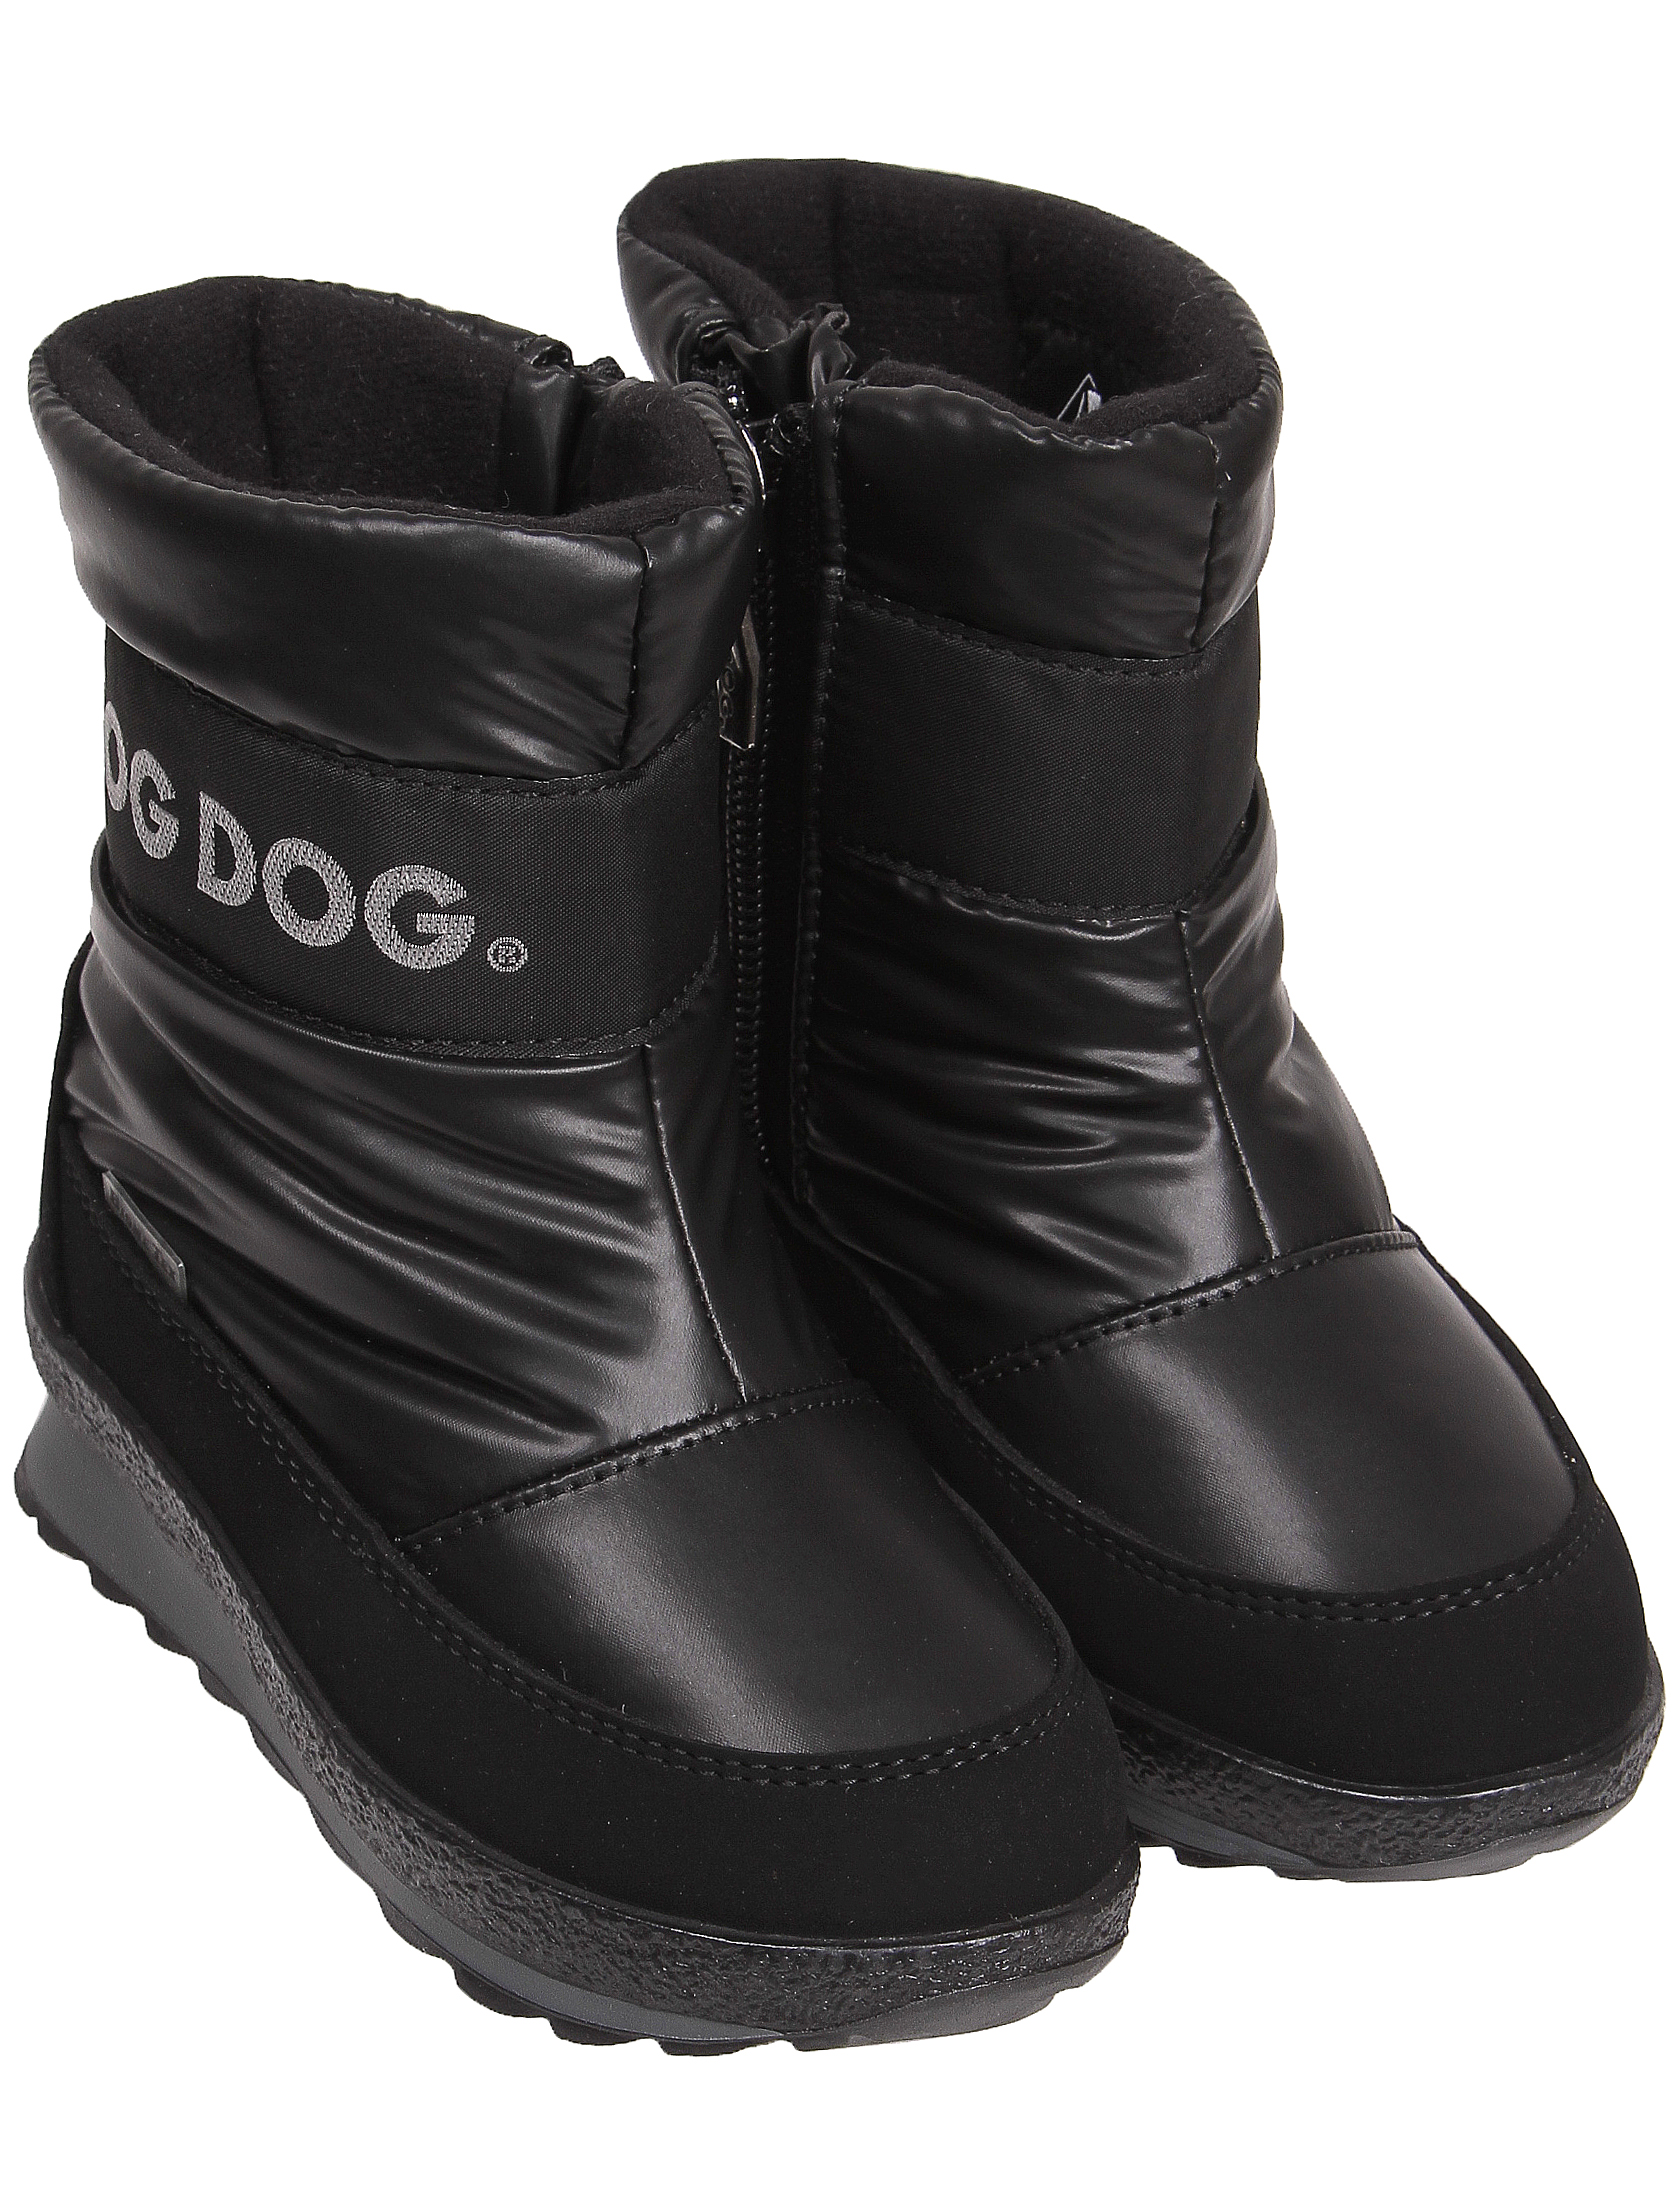 2120235, Сапоги Jog Dog, черный, 2021129980019  - купить со скидкой